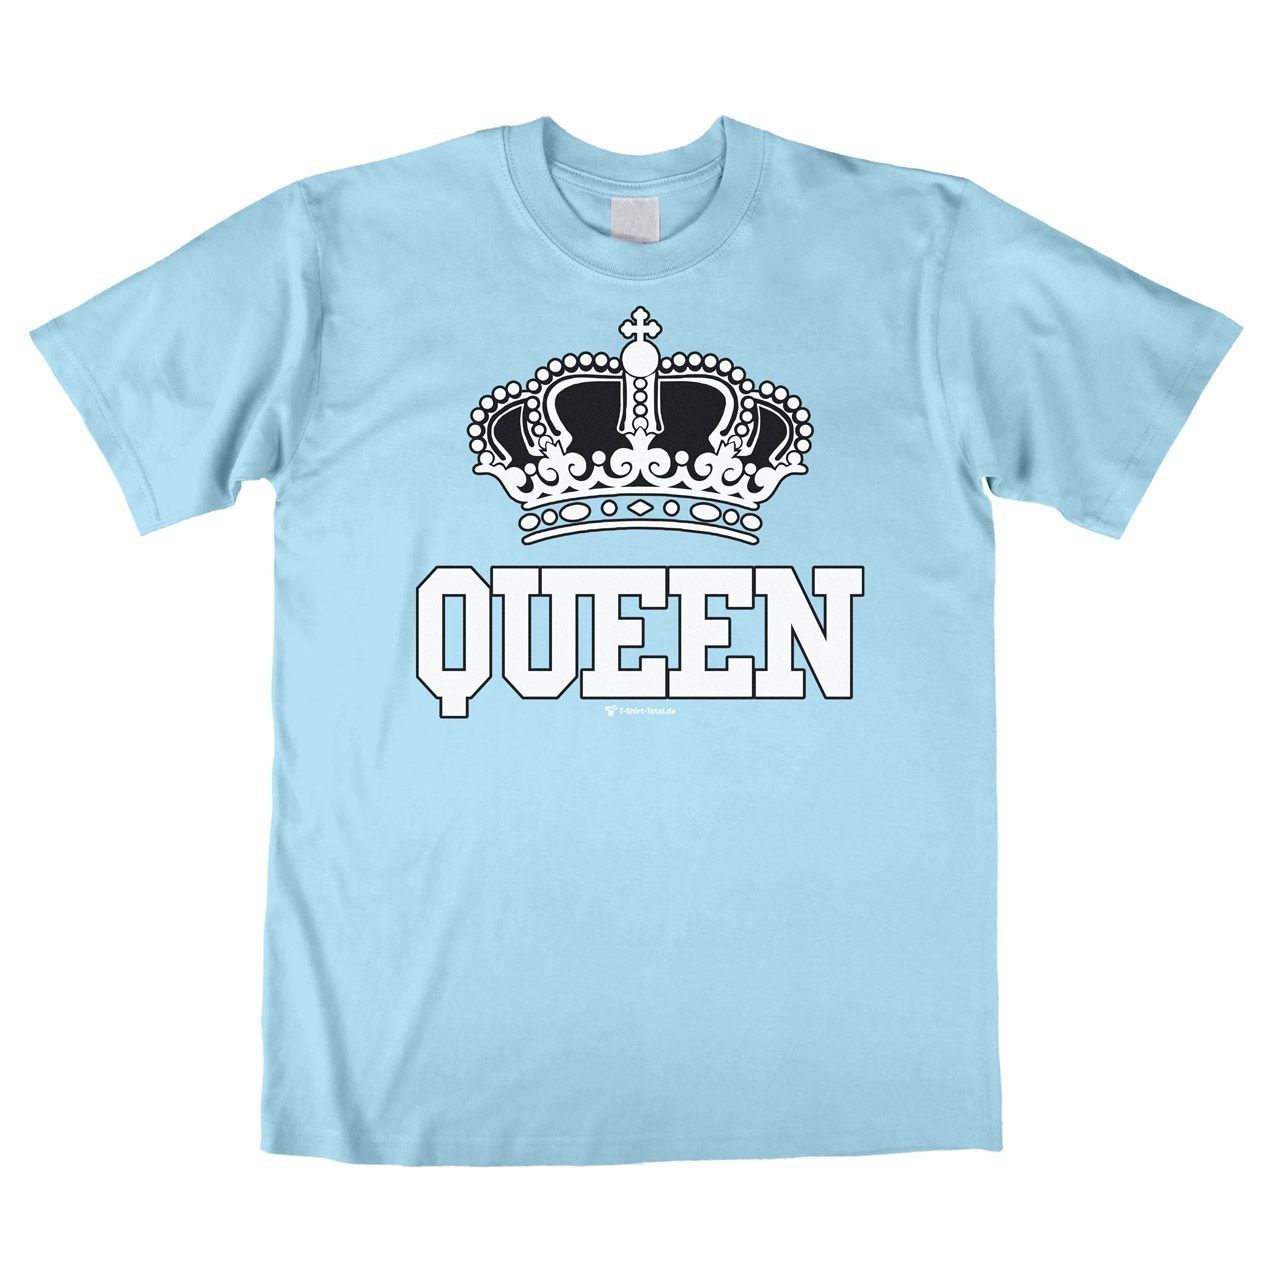 Queen Unisex T-Shirt hellblau Medium